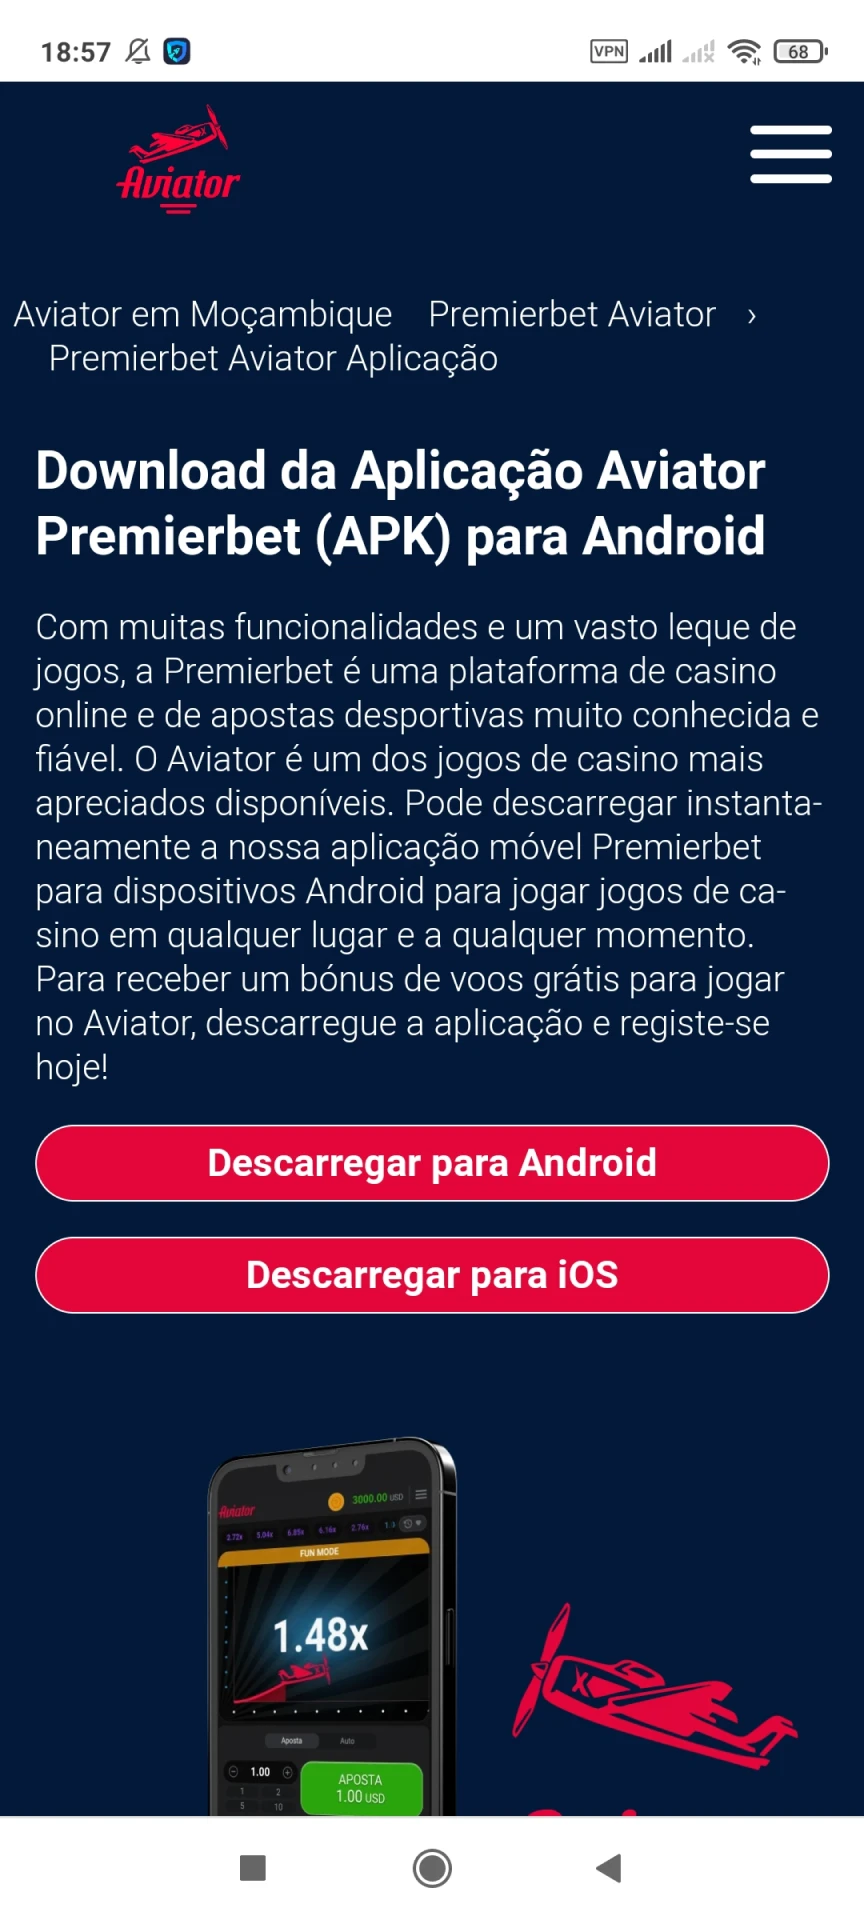 Visite a página inicial da Premierbet para baixar o aplicativo Android.